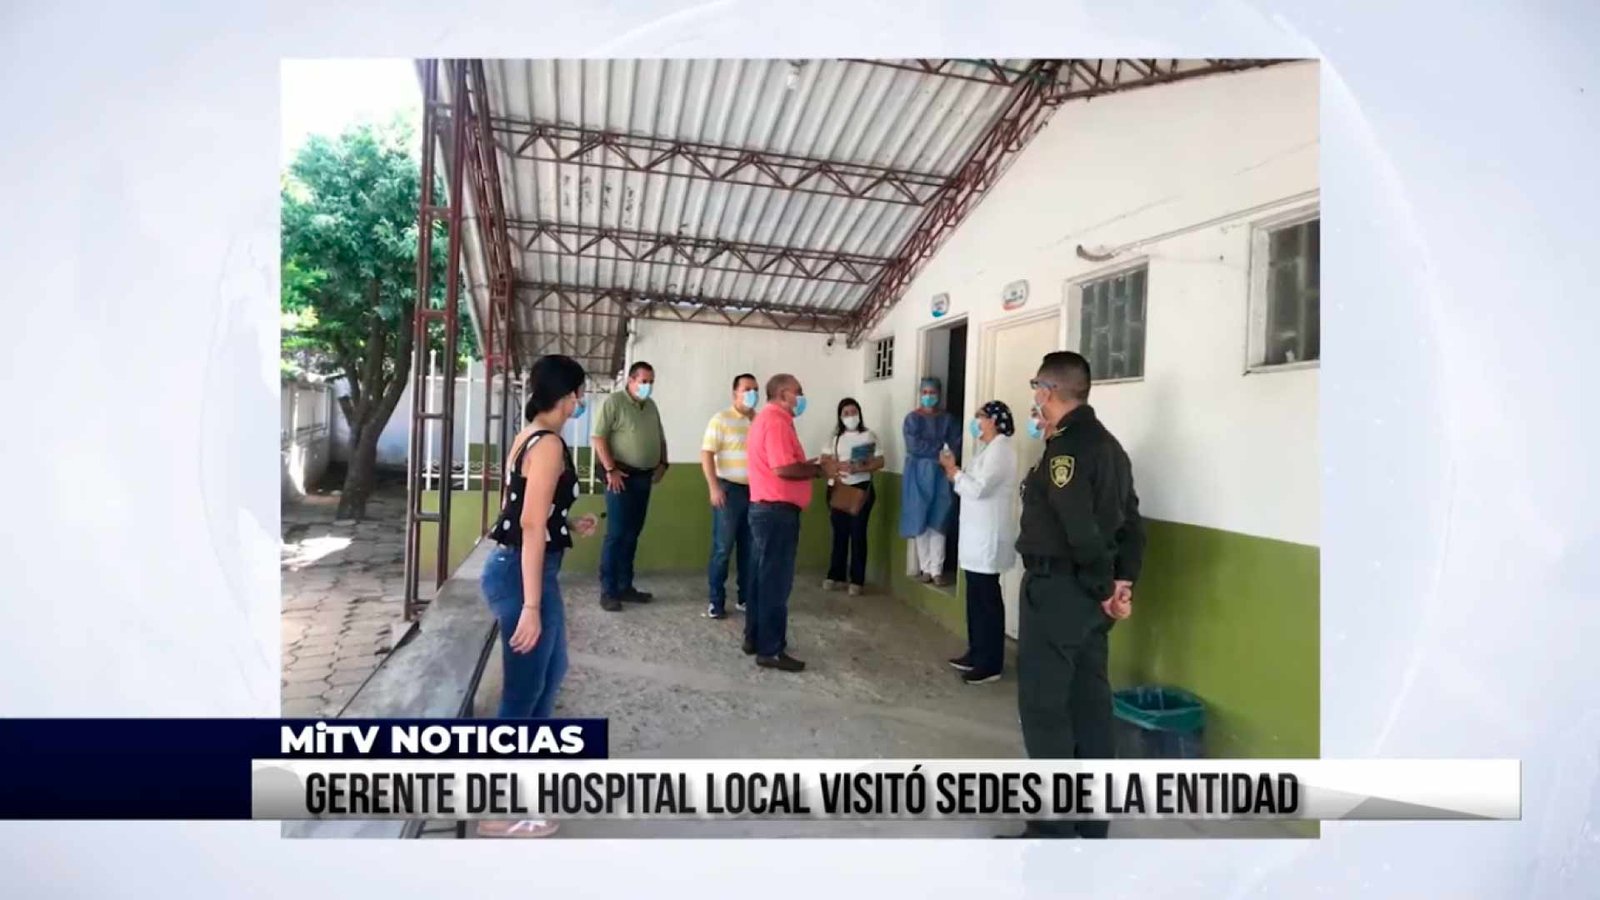 GERENTE DEL HOSPITAL LOCAL VISITÓ SEDES DE LA ENTIDAD